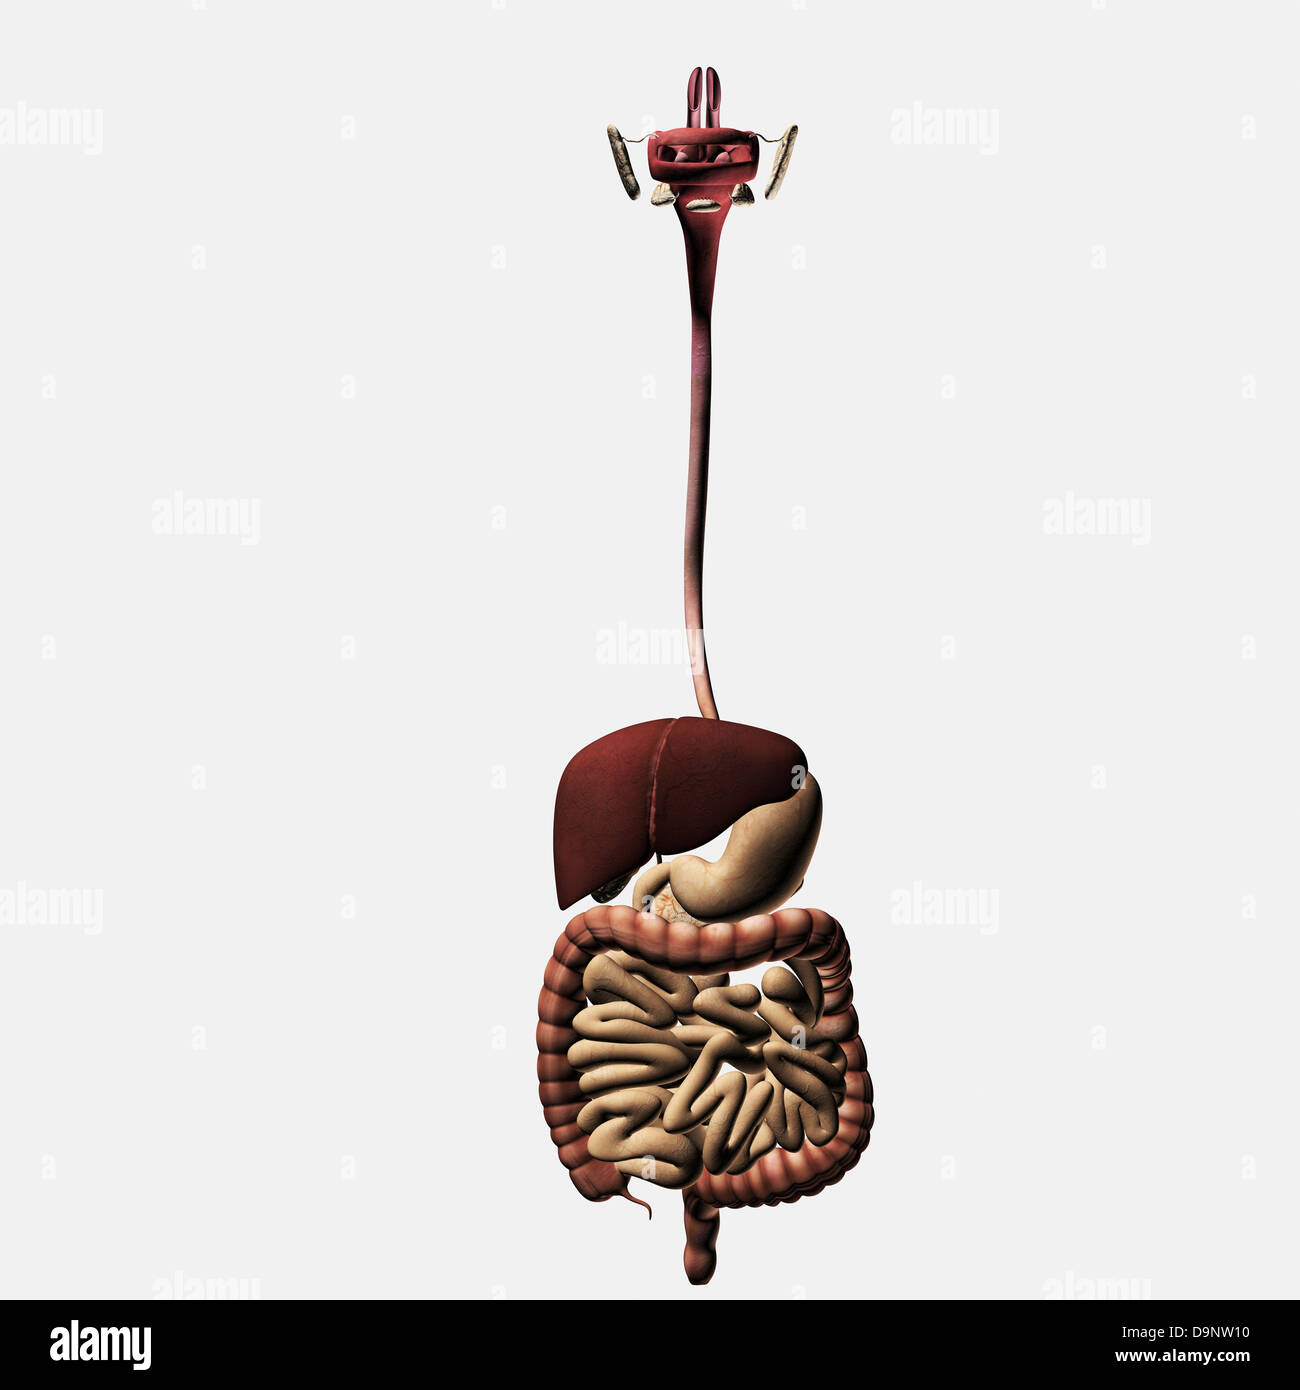 Illustrazione medica dell'apparato digestivo umano; la cavità orale, esofago, del fegato, dello stomaco, il grande intestino tenue. Foto Stock